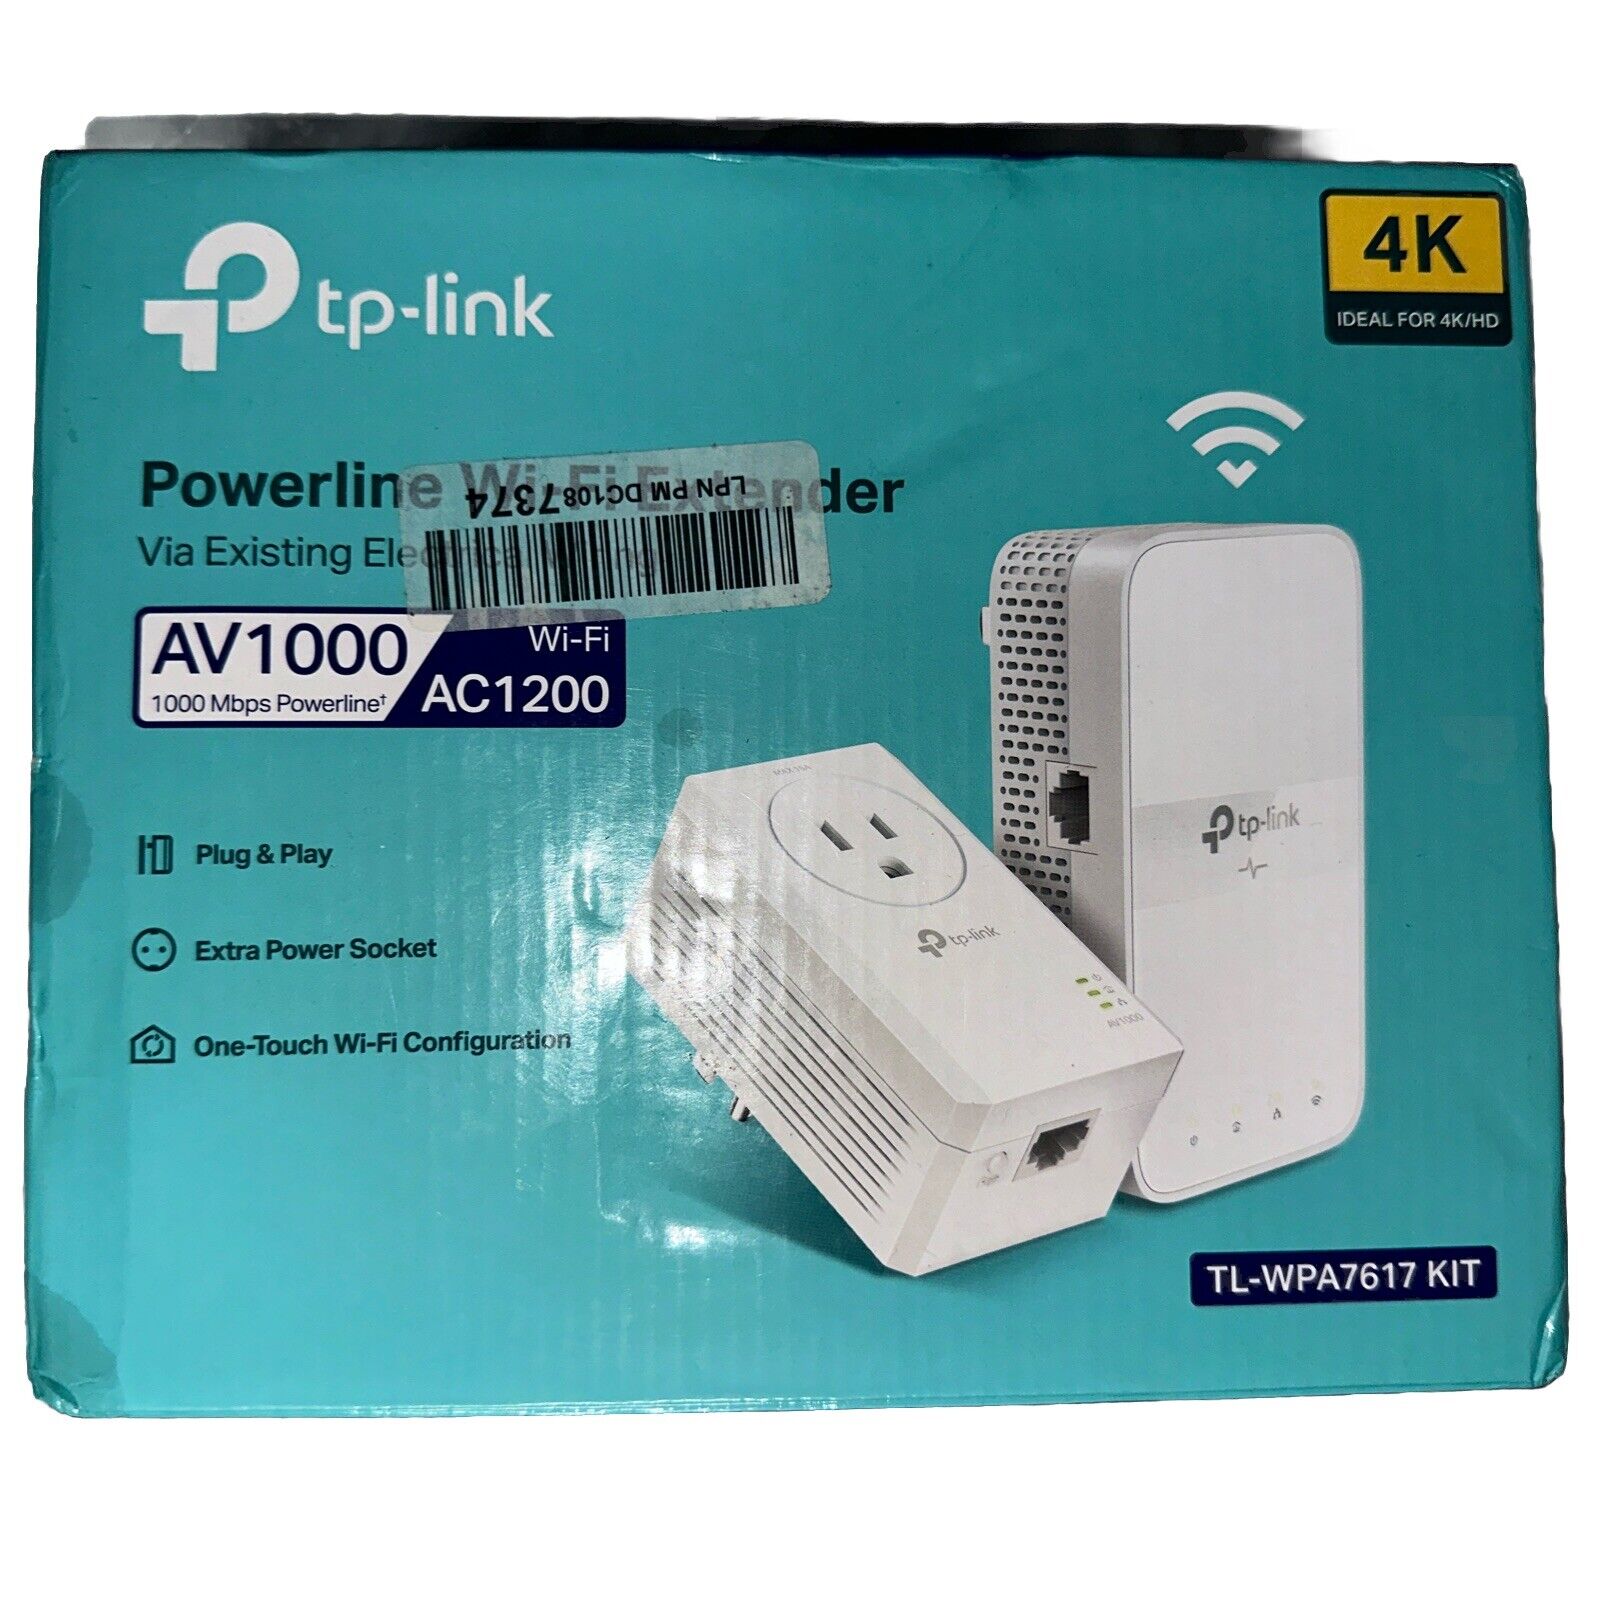 TP-Link TL-WPA7617 KIT AV1000 Gigabit Powerline/AC1200 WiFi Range Extender Kit